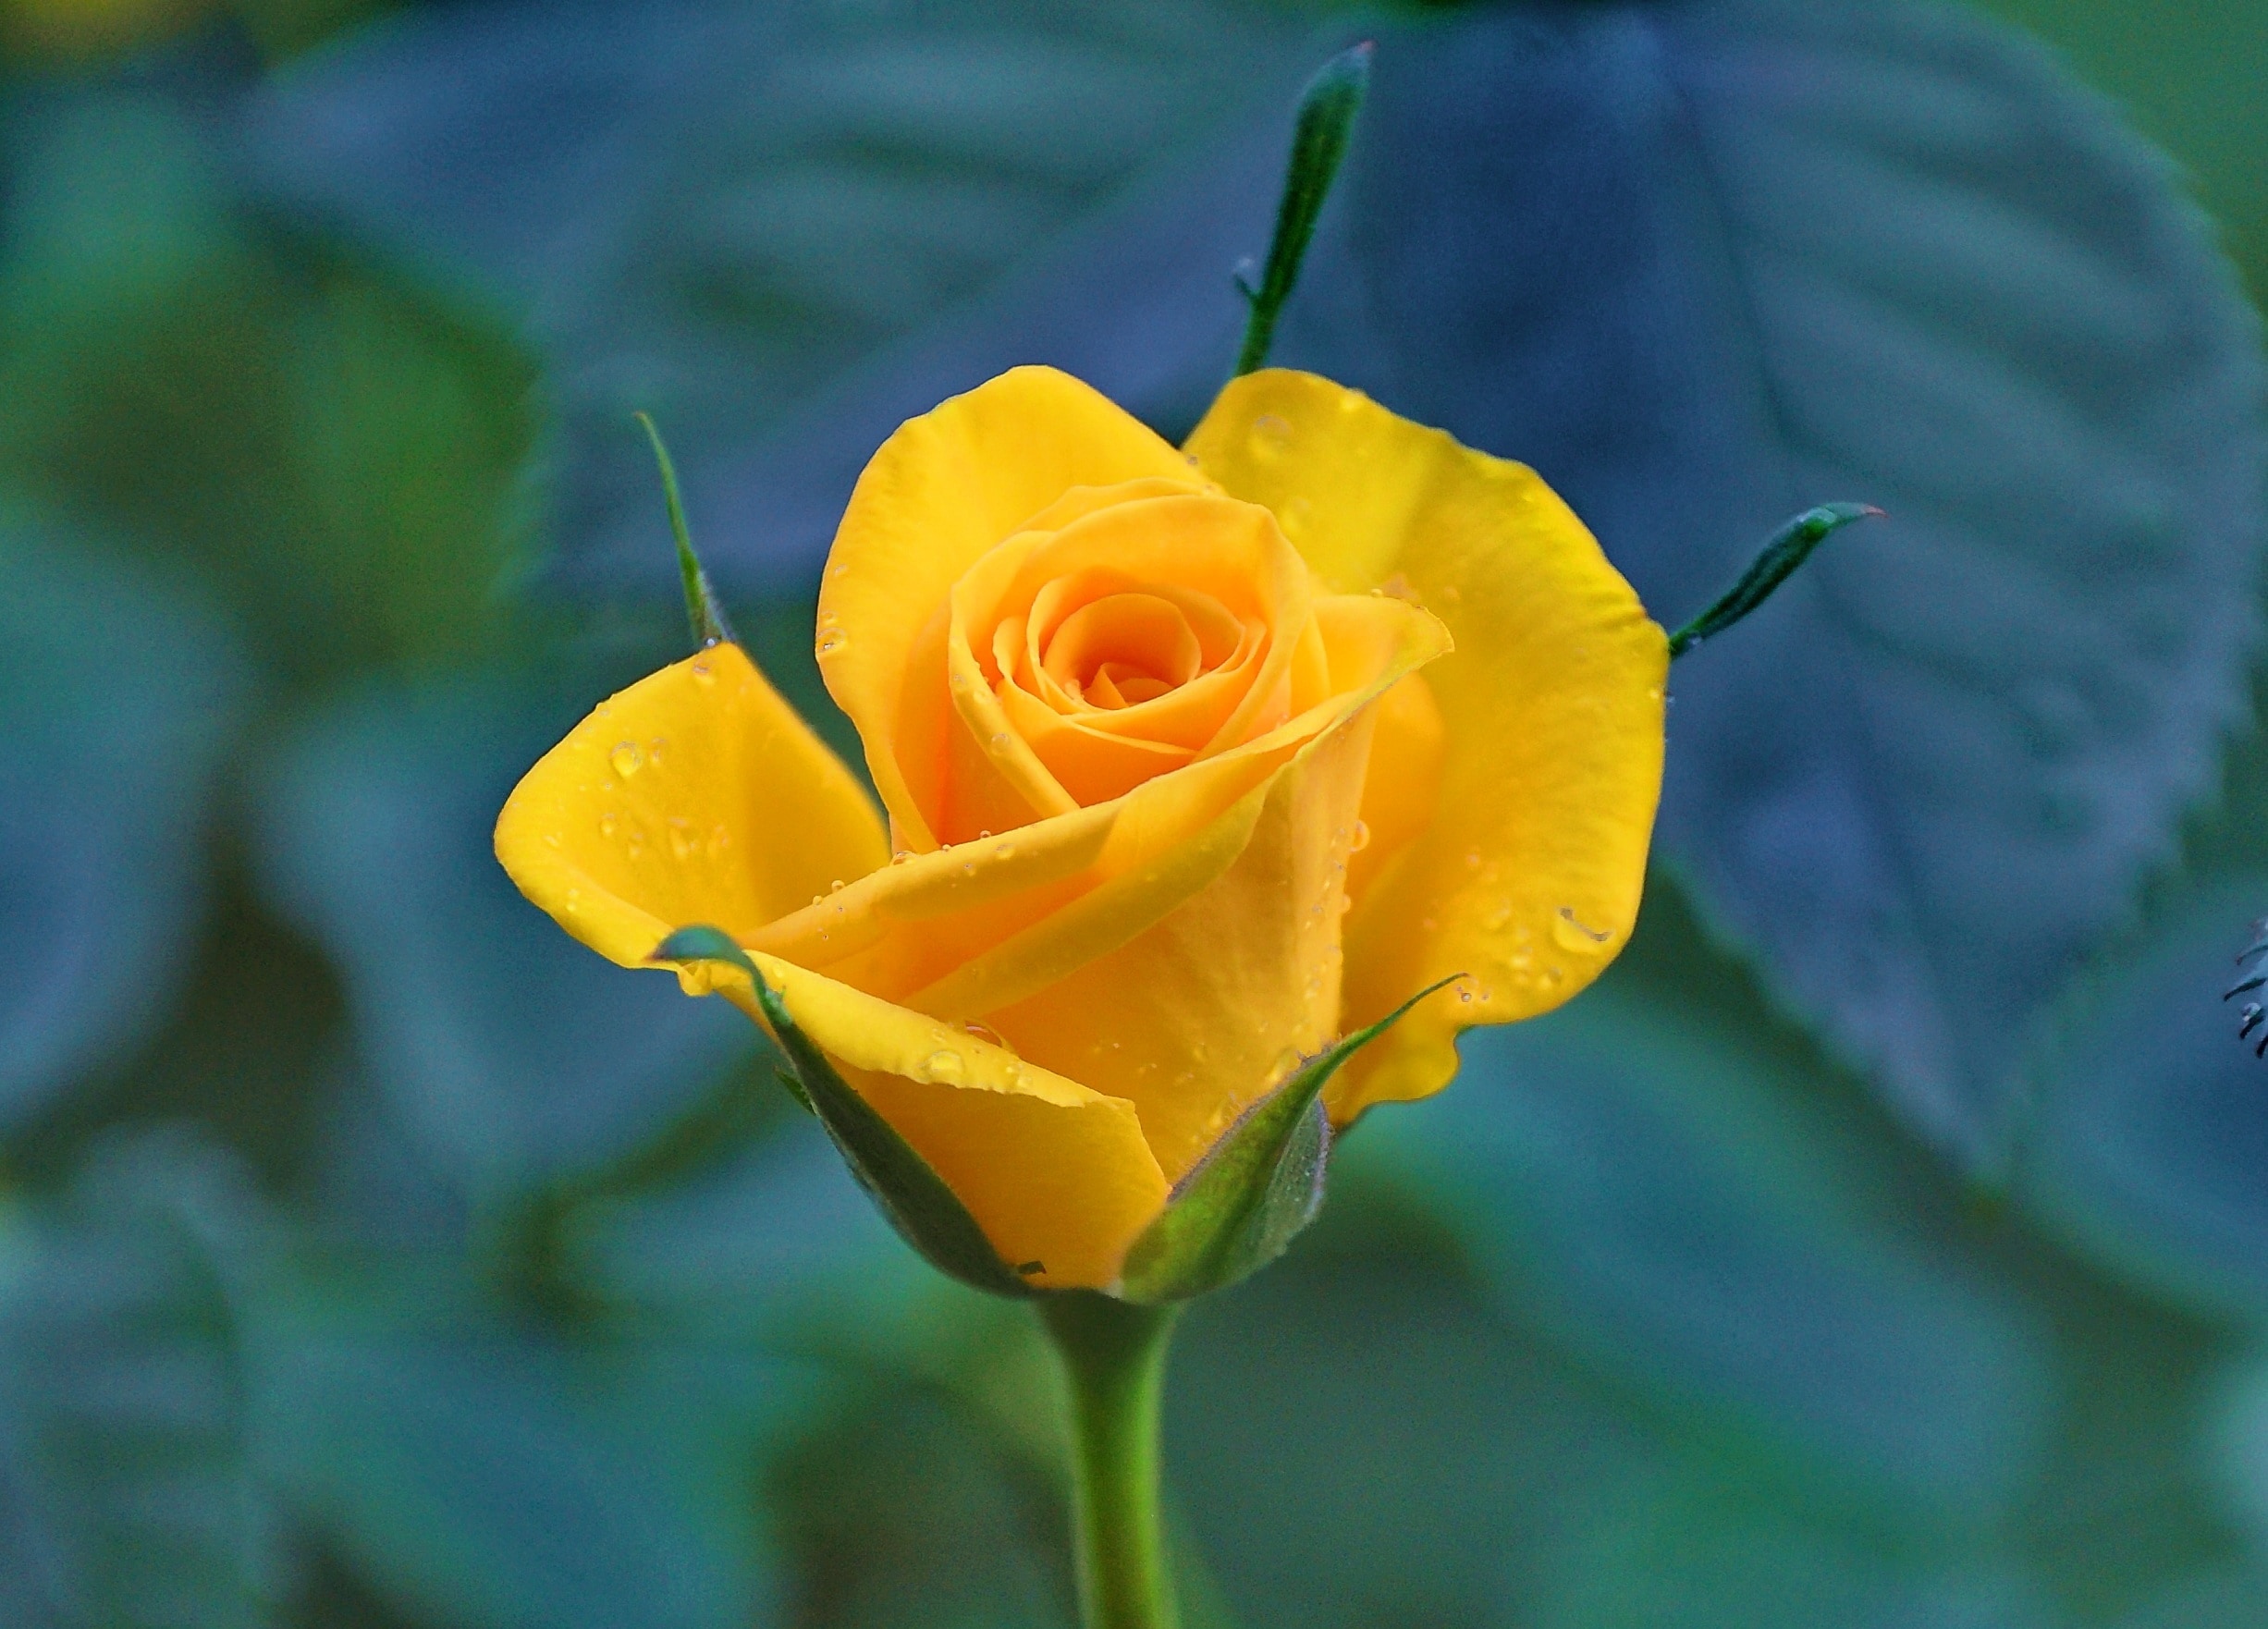 Ярко желтые розы